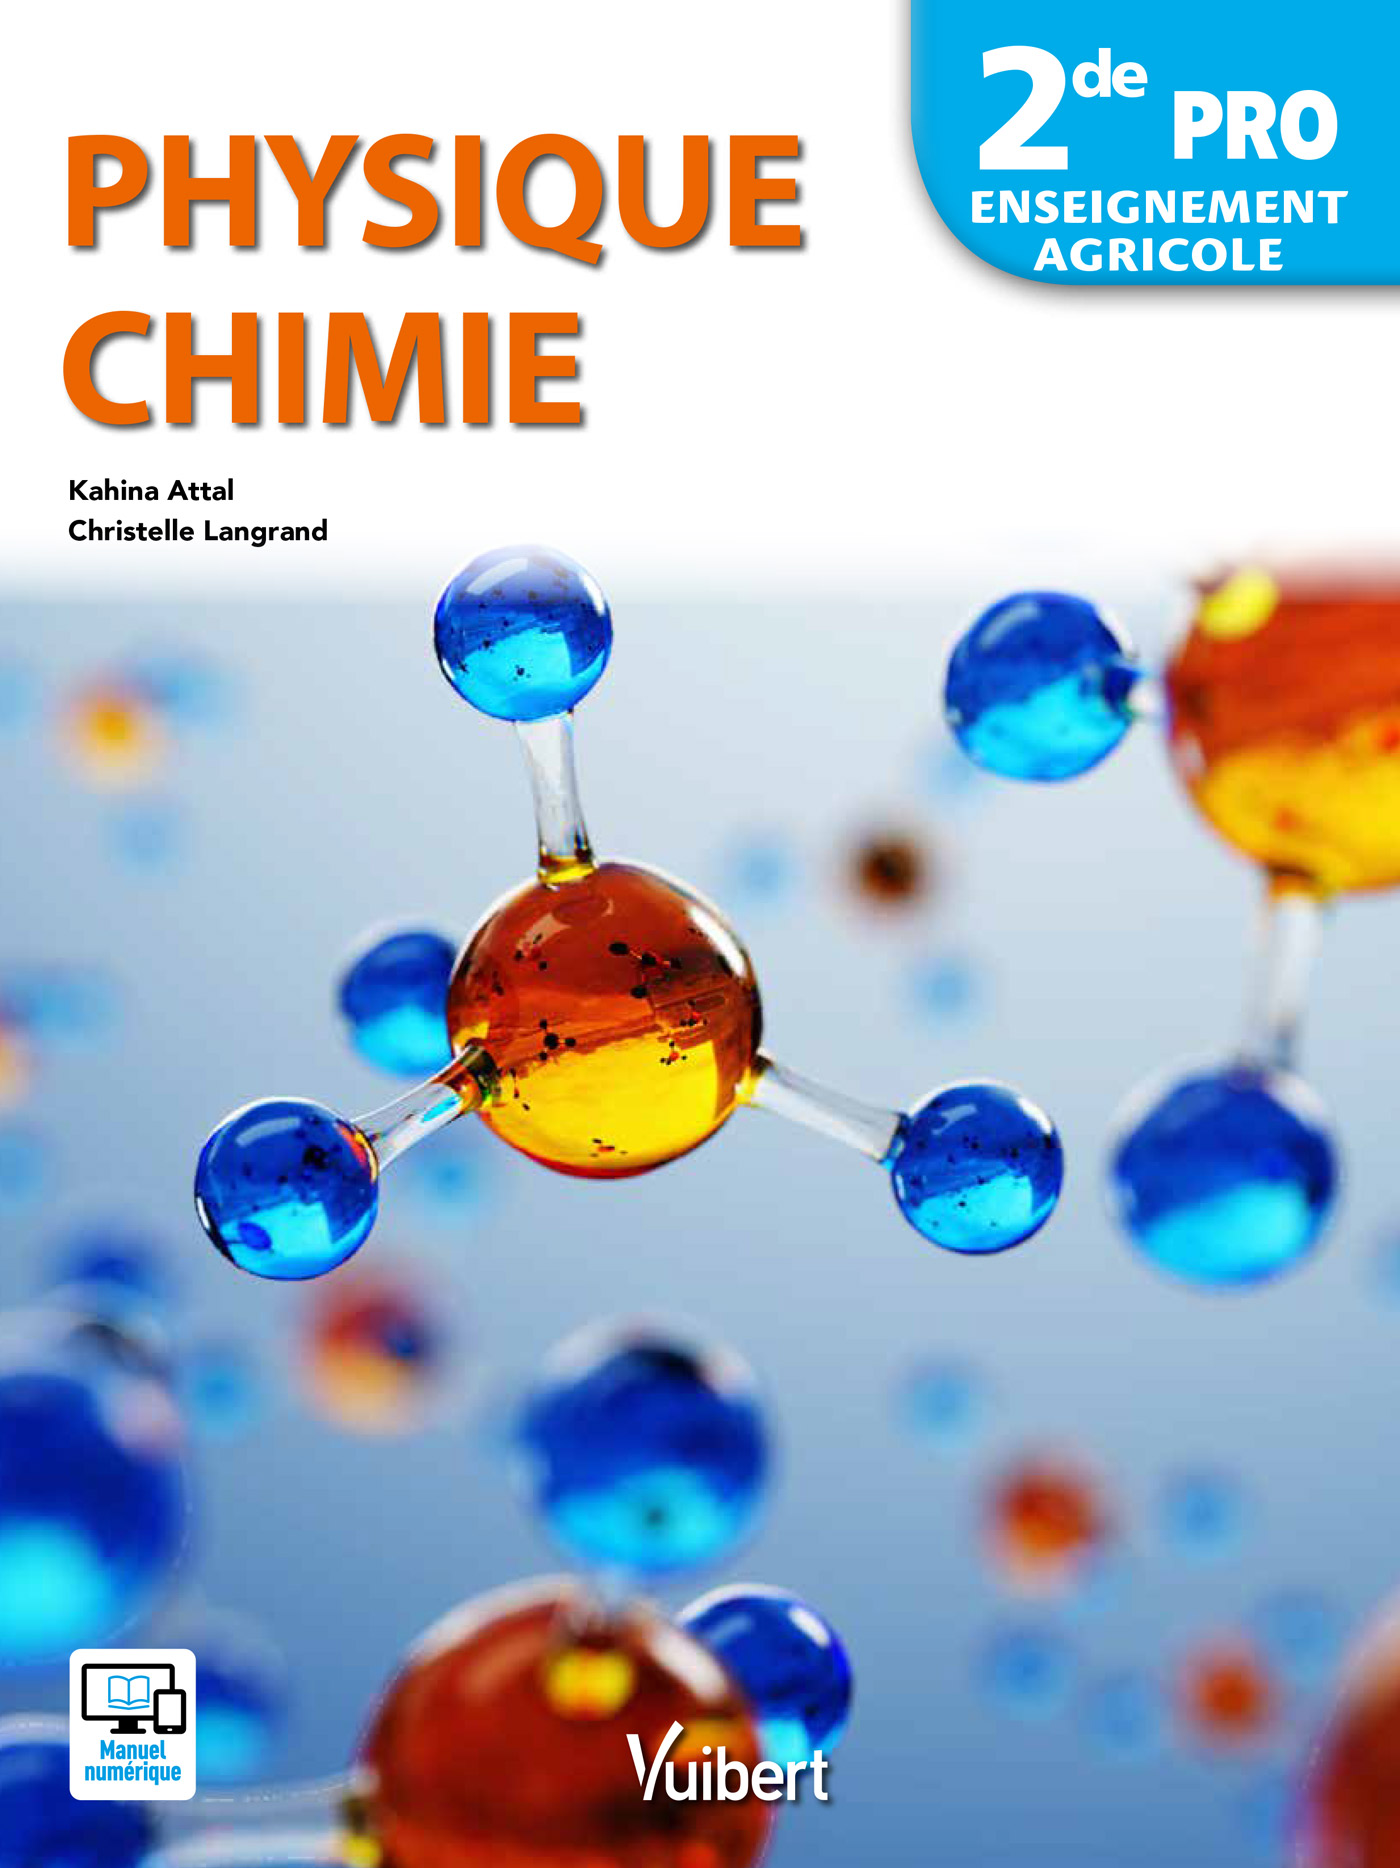 Livre Physique Chimie Seconde En Ligne Physique Chimie 2de Pro - Enseignement Agricole (2018) | Vuibert